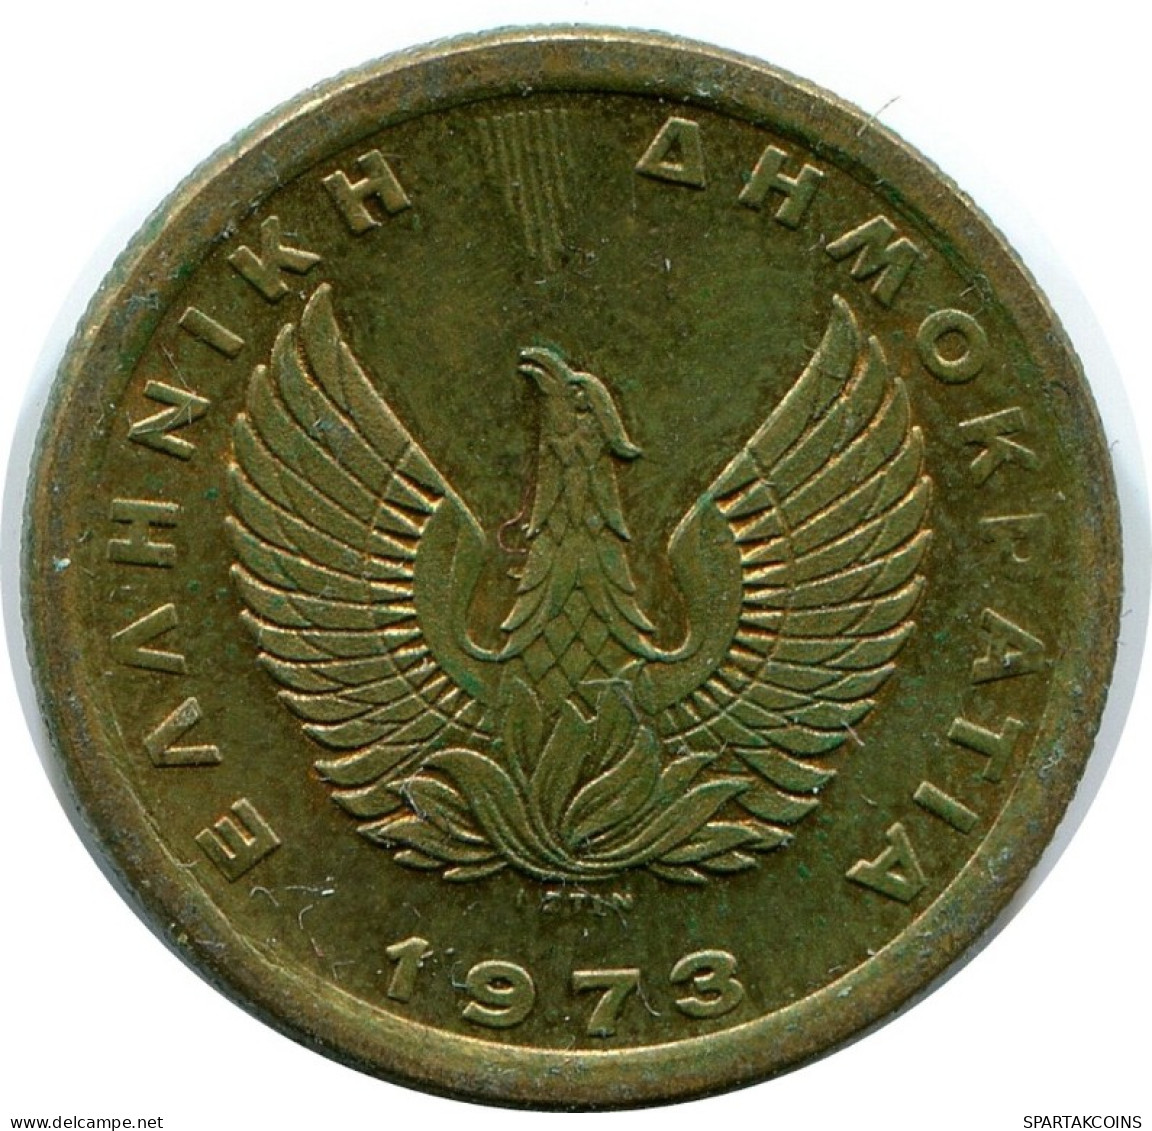 50 LEPTA 1973 GRIECHENLAND GREECE Münze #AH727.D.A - Griekenland